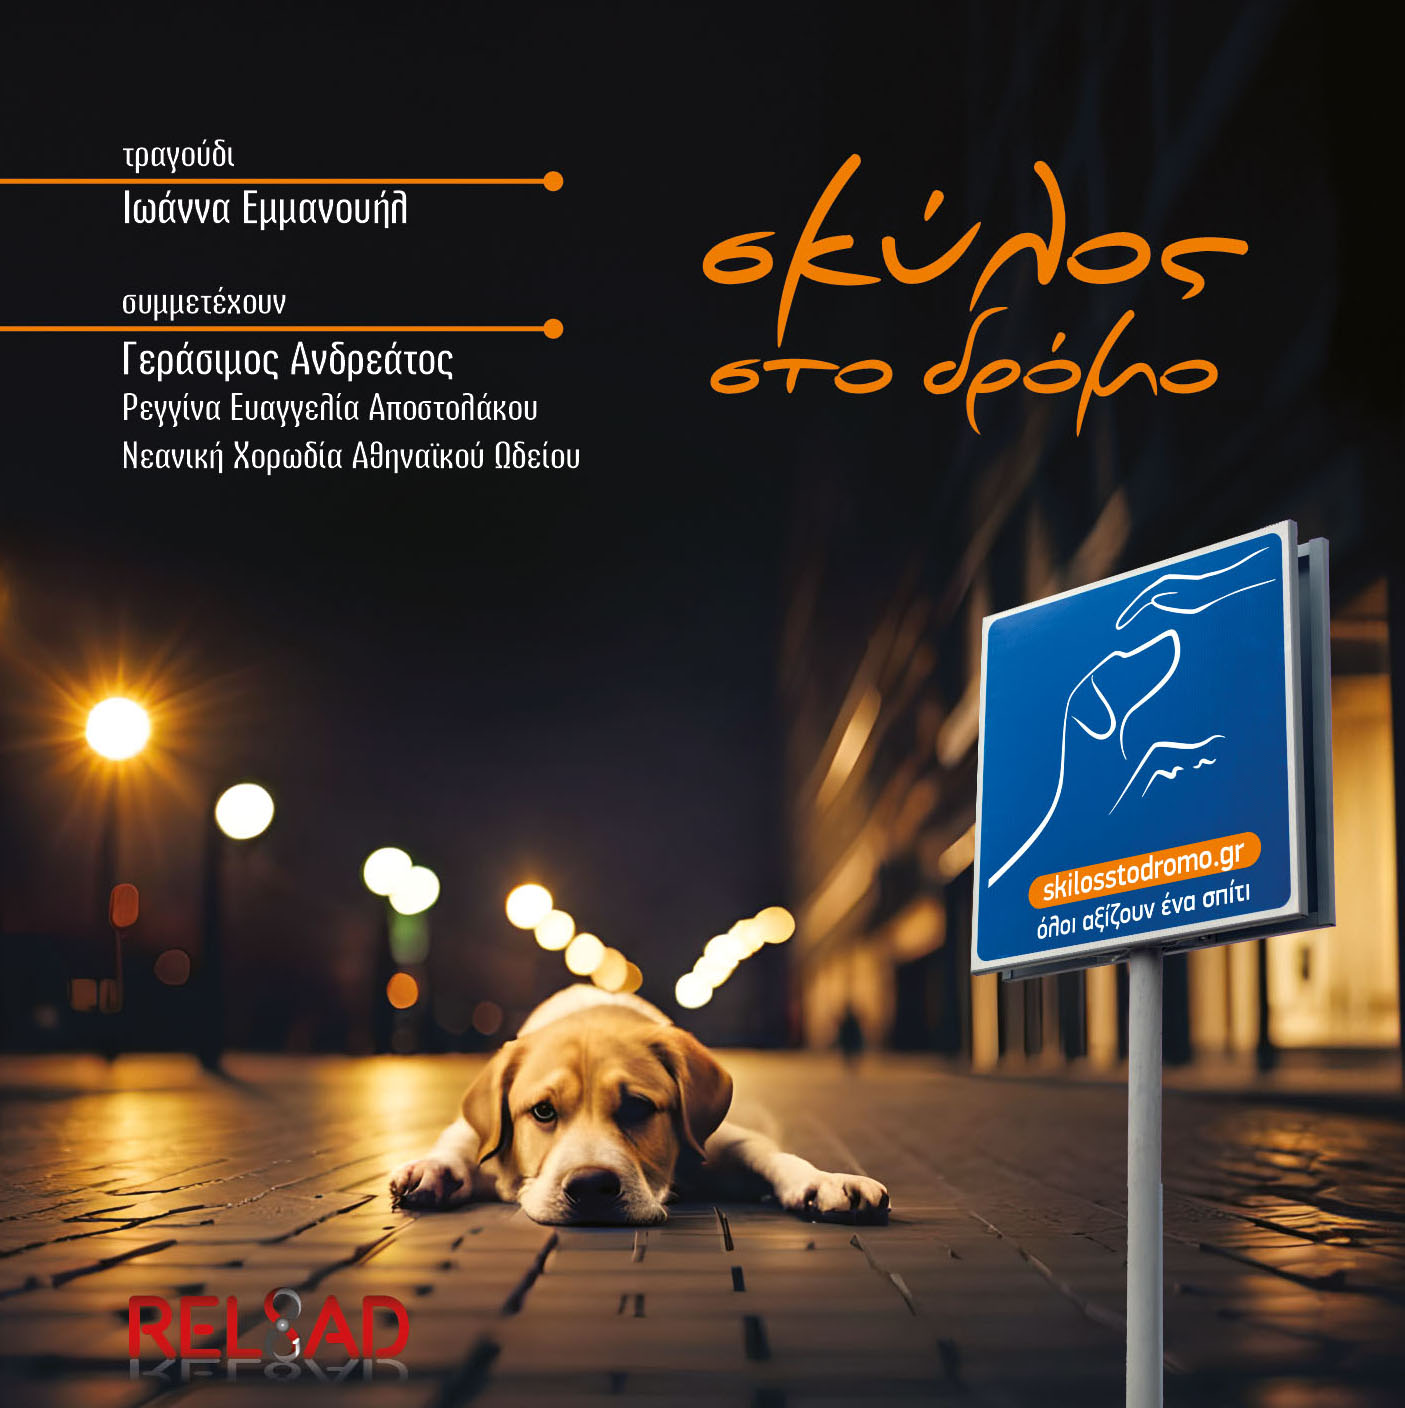 Παρουσίαση του album «Σκύλος στο δρόμο», στη μουσική σκηνή Σφίγγα την Πέμπτη 4 Απριλίου